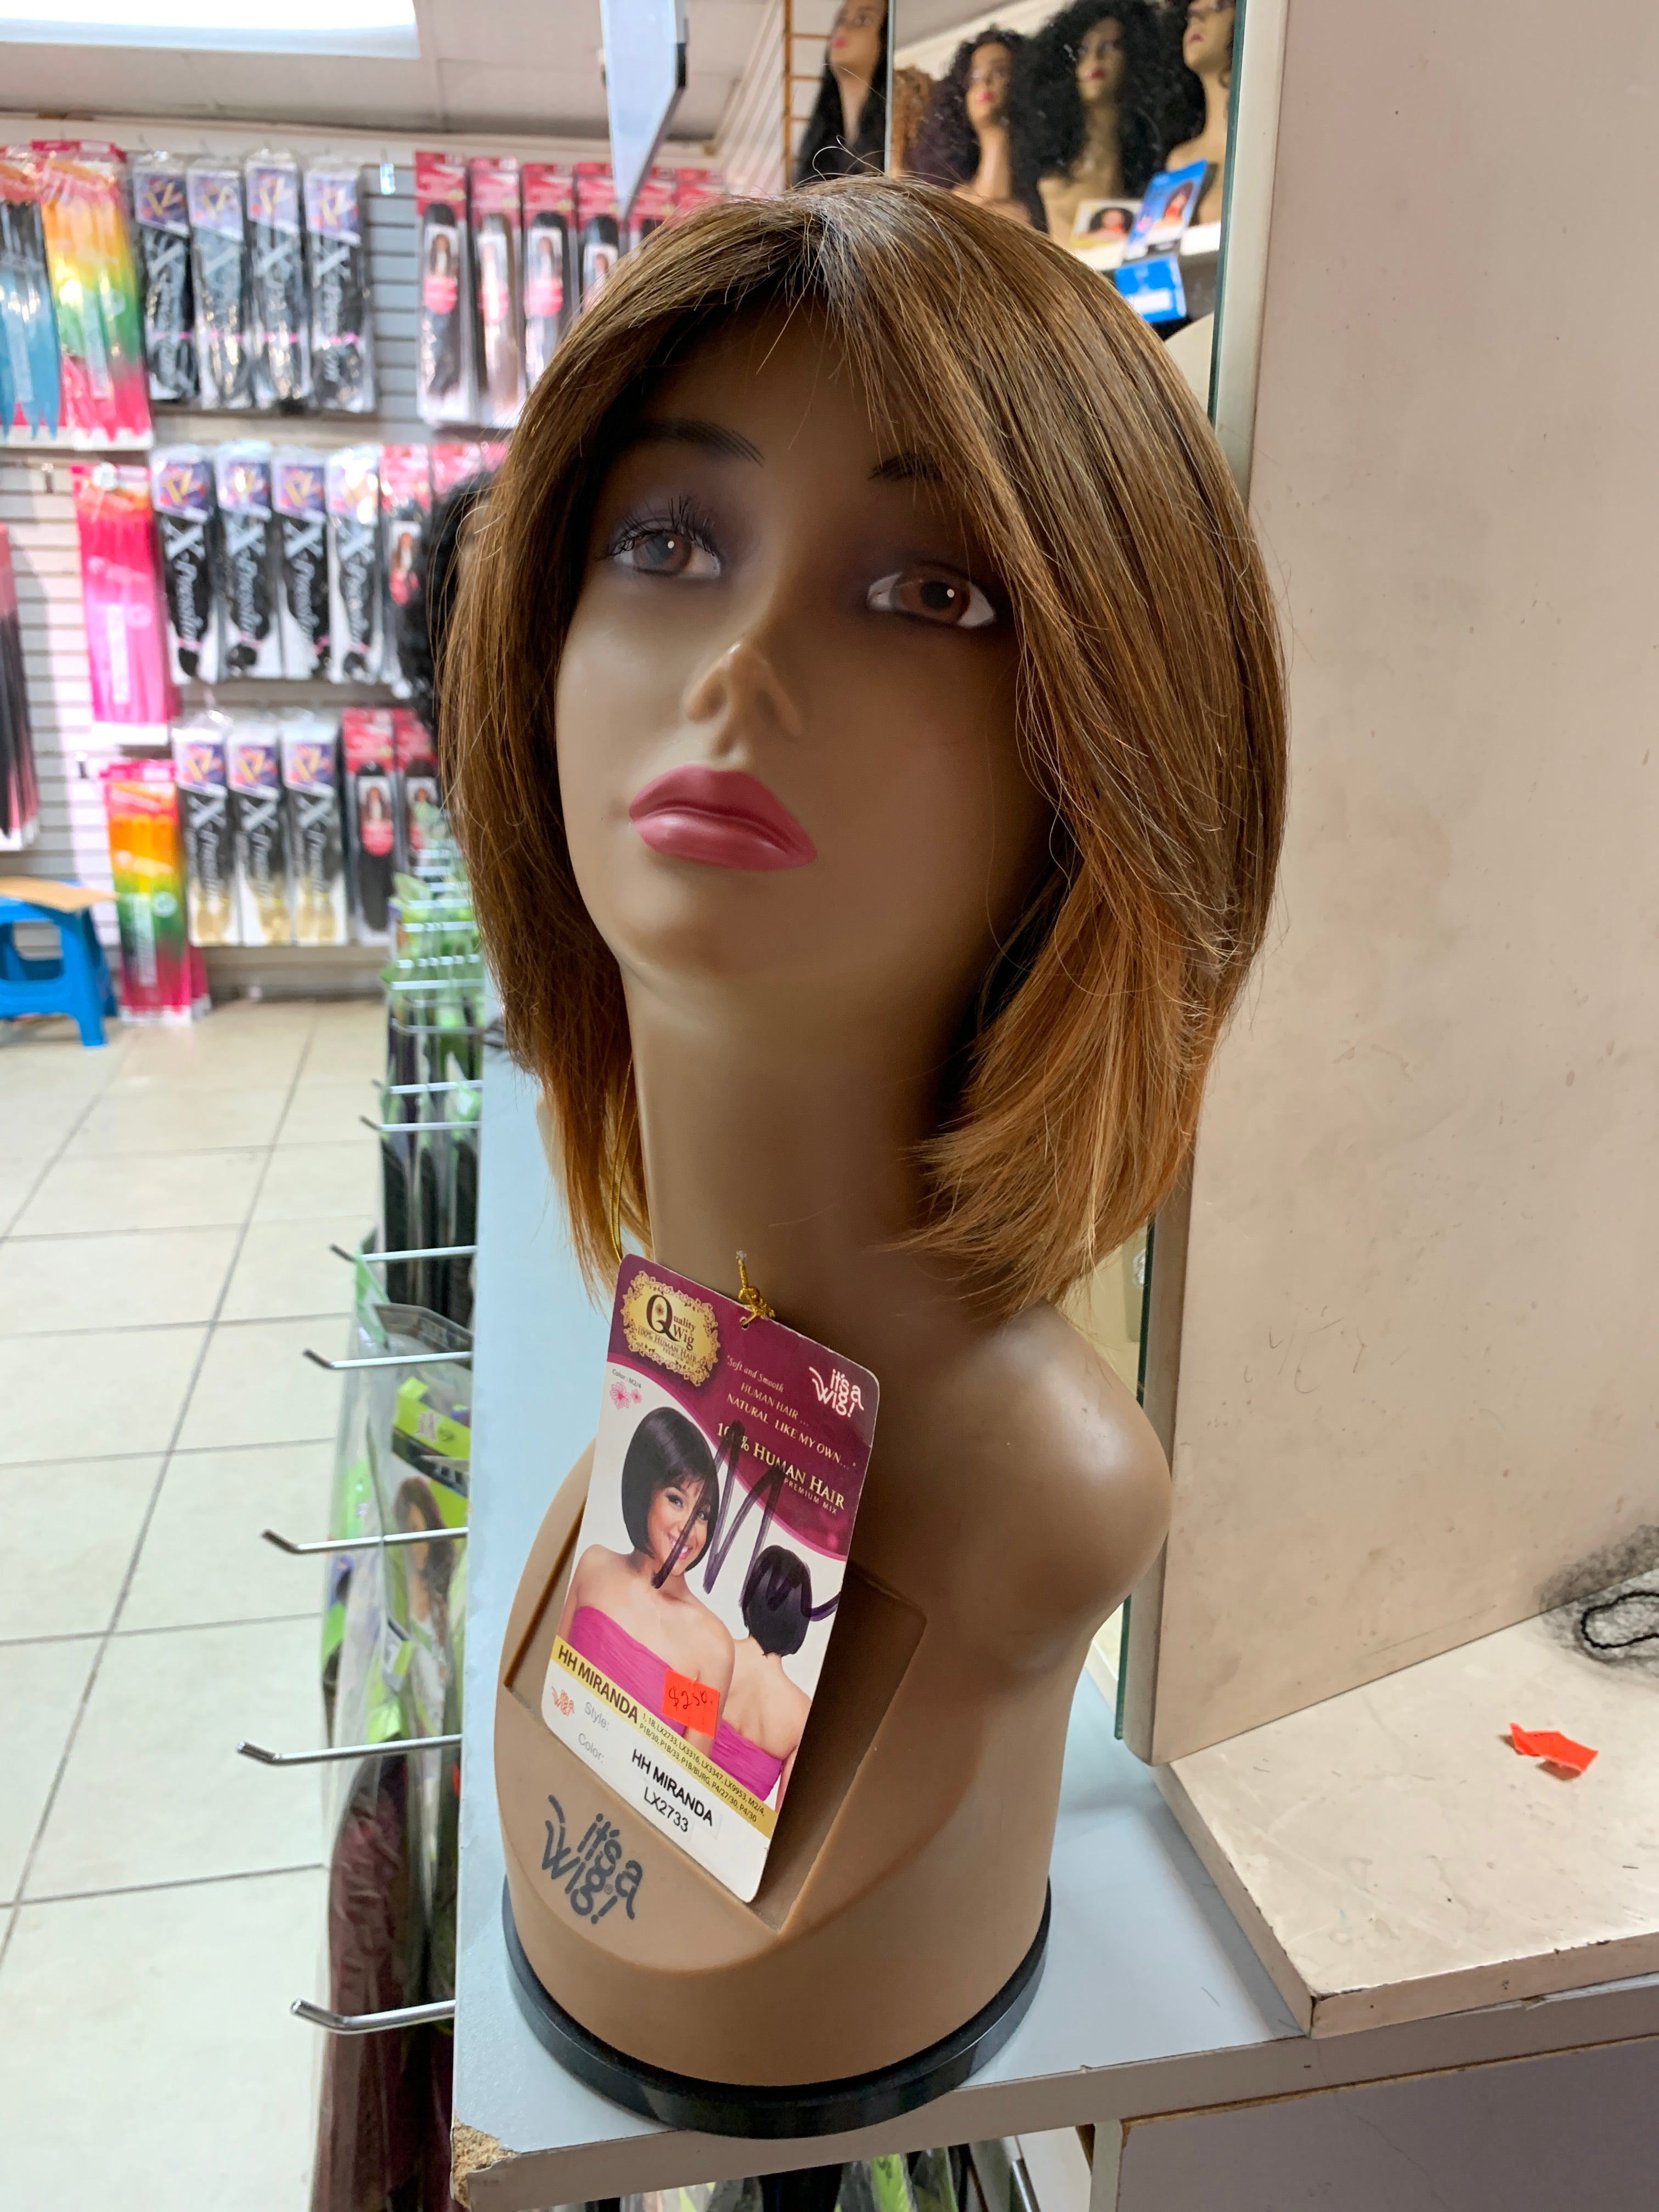 It’s a wig hh Miranda